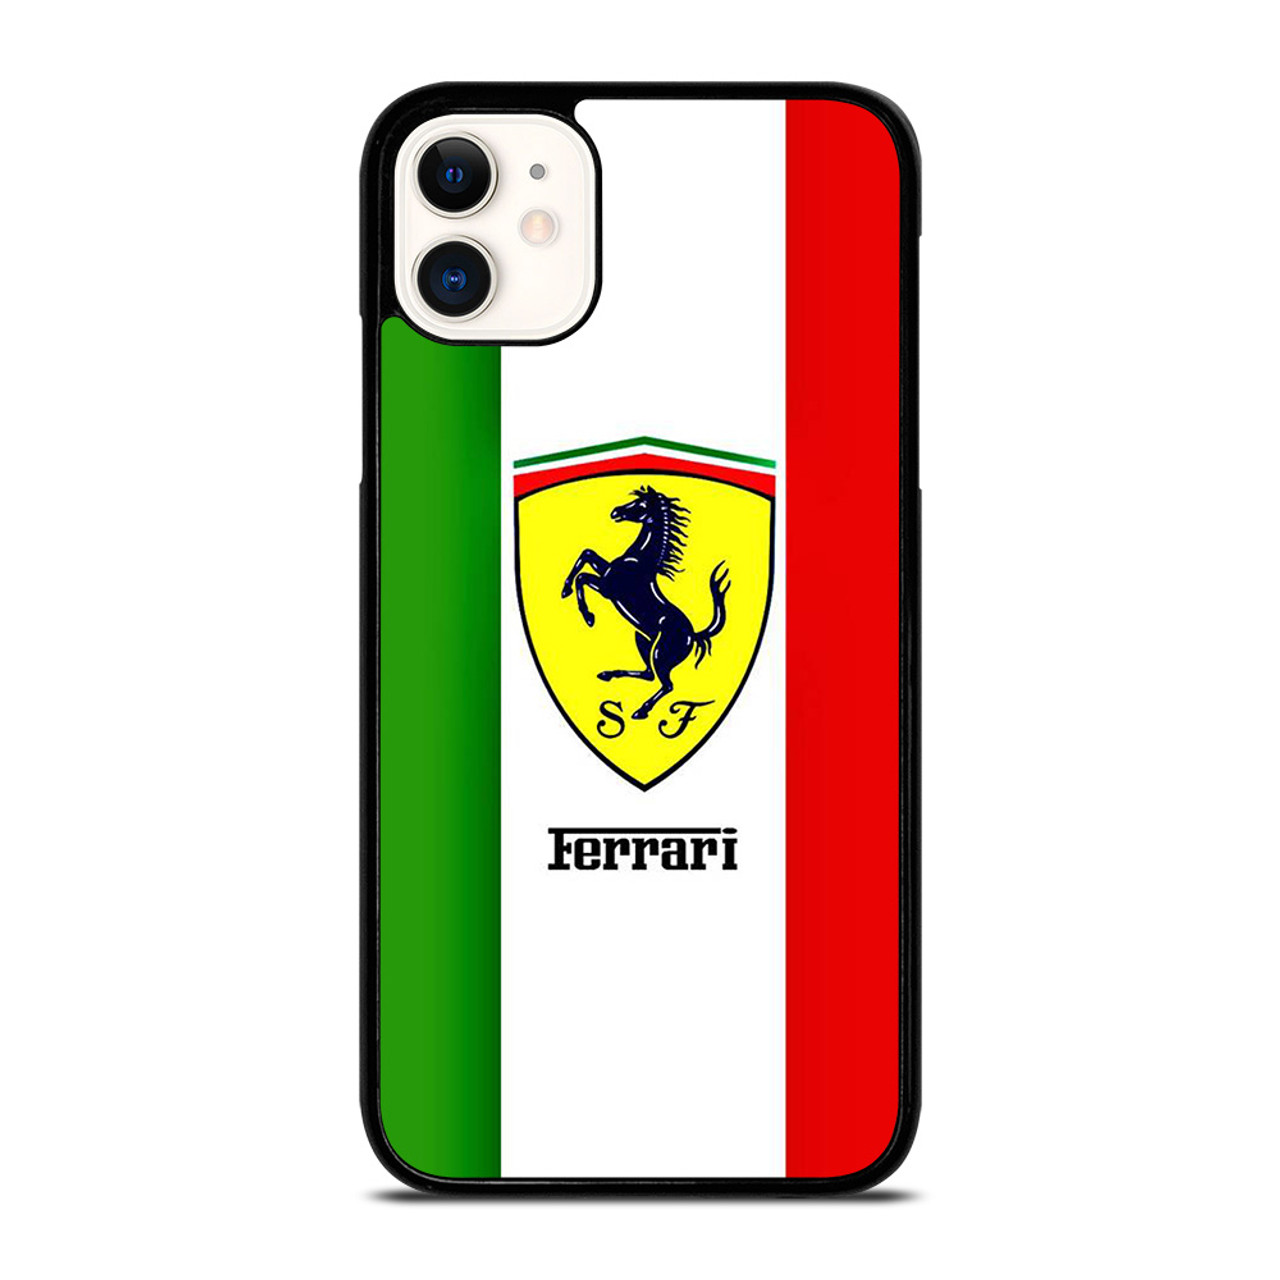 FERRARI ITALI FLAG LOGO iPhone 11 Case Cover